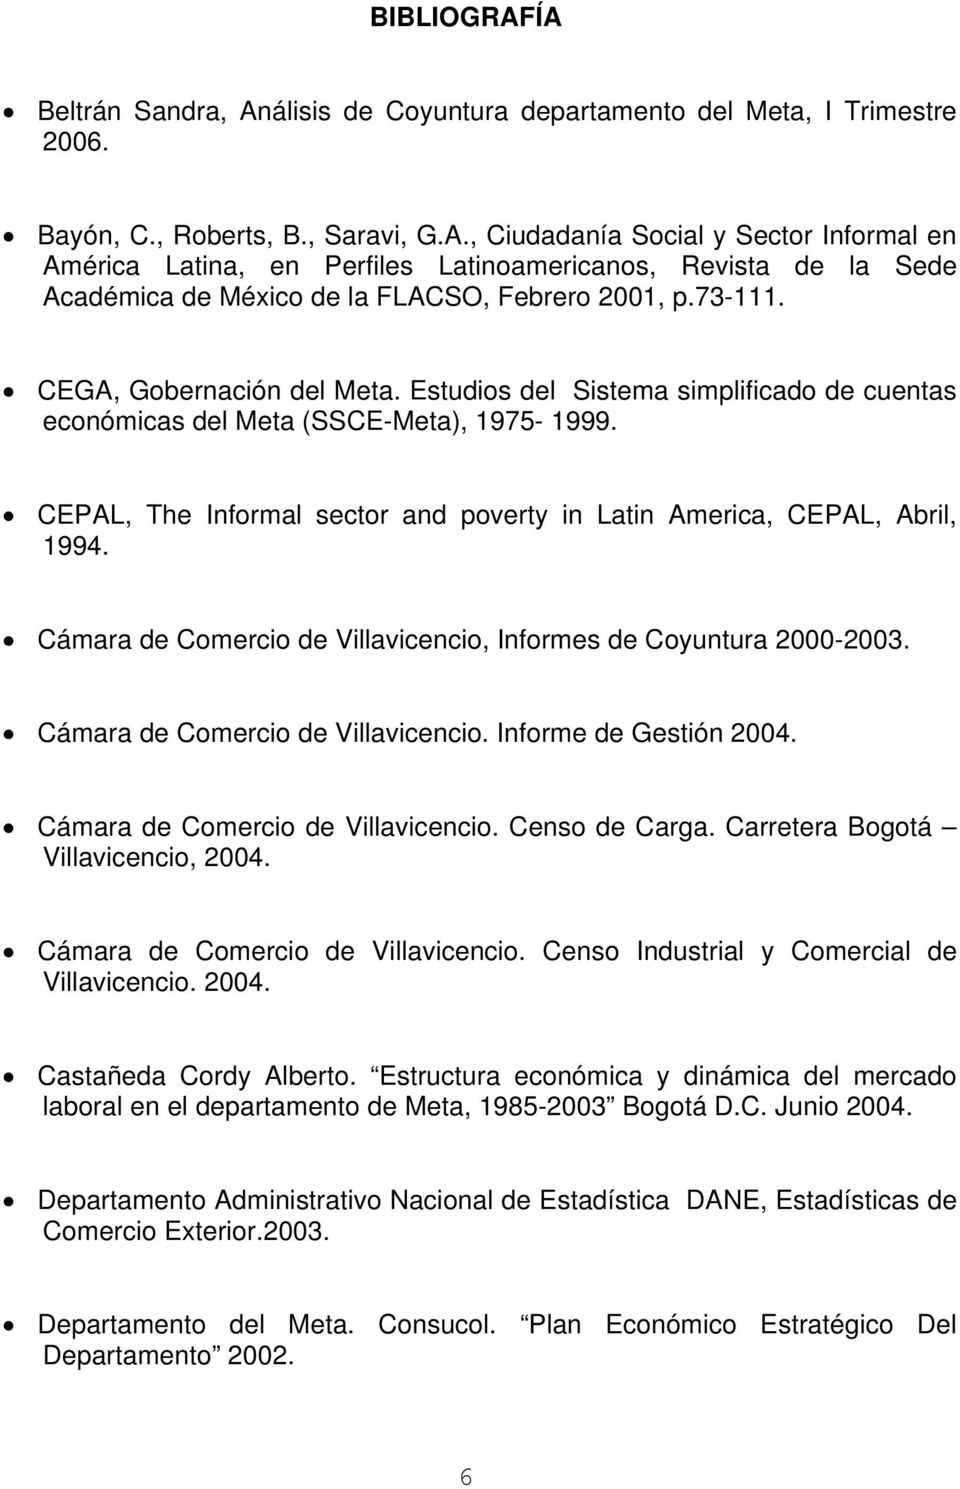 CEPAL, The Informal sector and poverty in Latin America, CEPAL, Abril, 1994. Cámara de Comercio de Villavicencio, Informes de Coyuntura 2000-2003. Cámara de Comercio de Villavicencio. Informe de Gestión 2004.